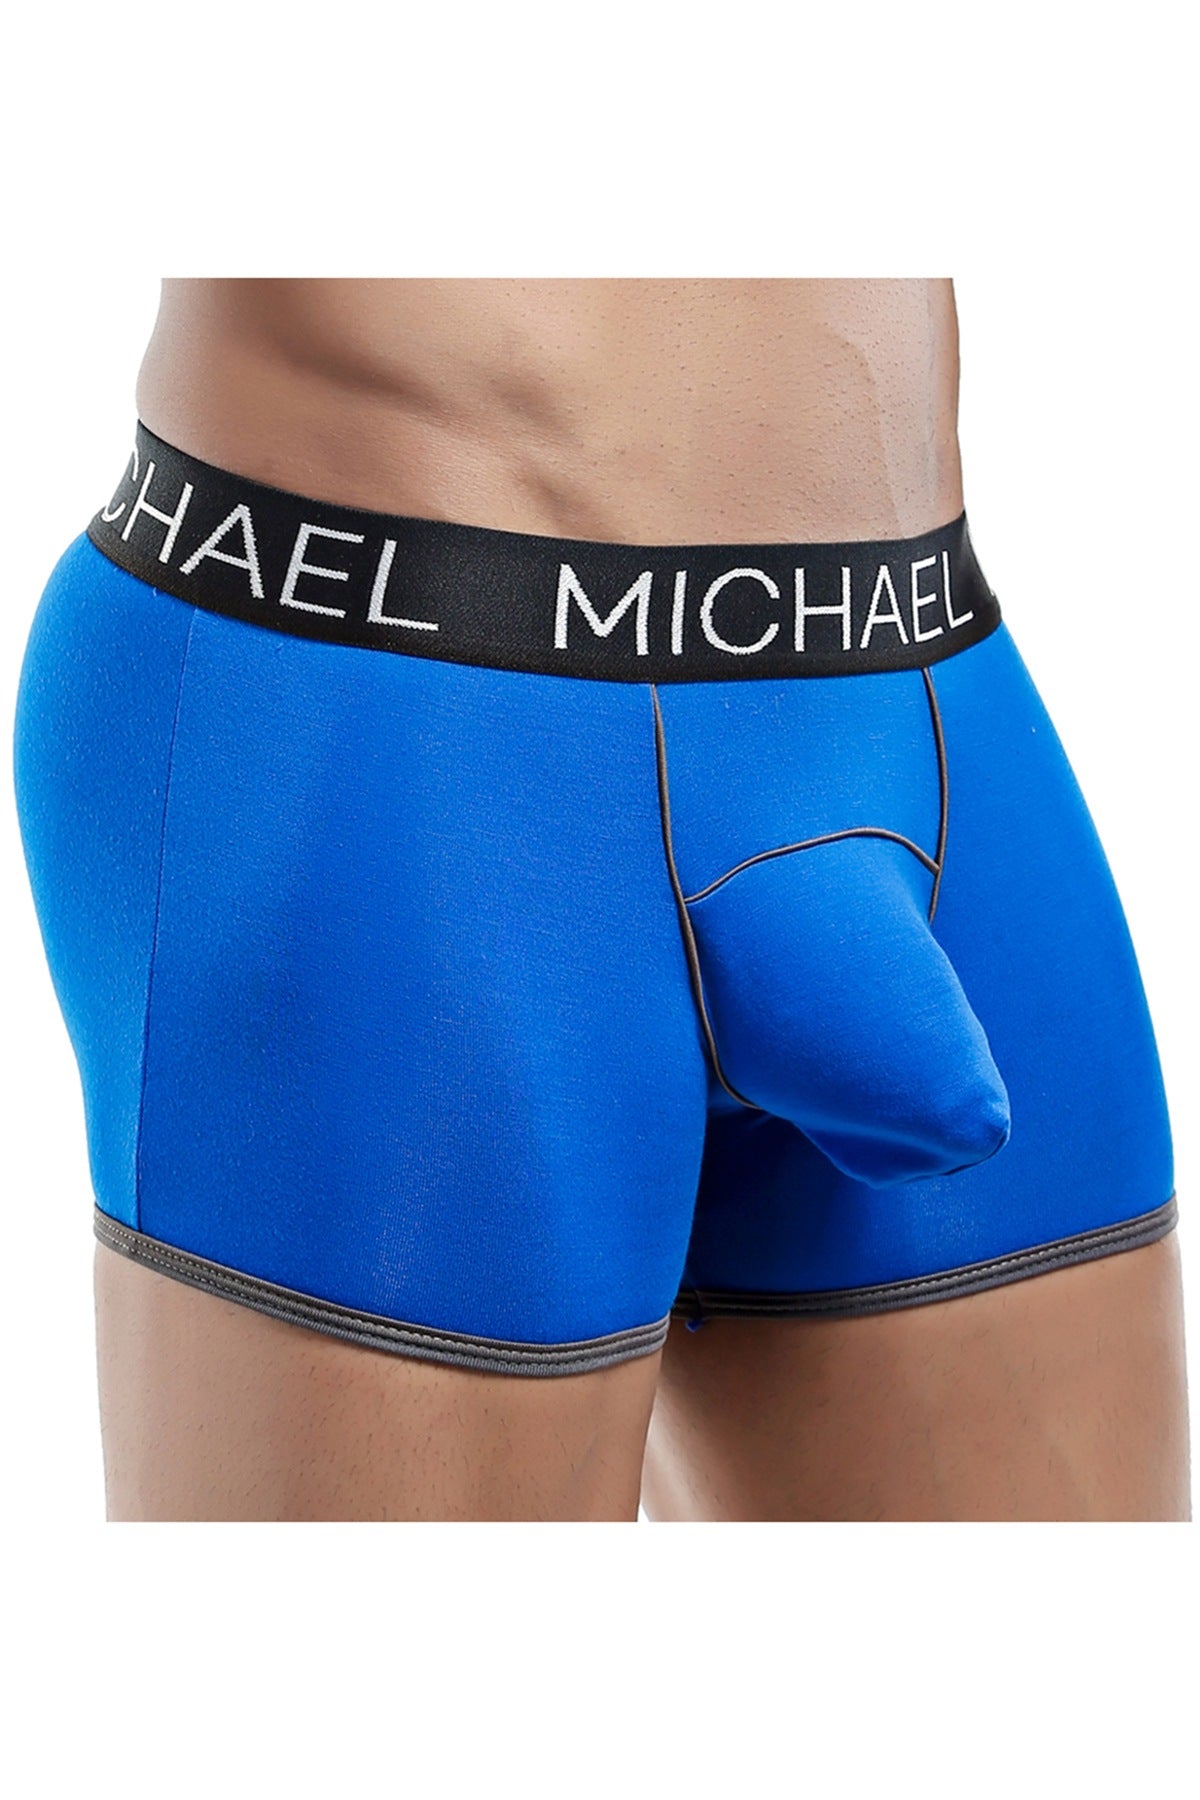 MICHAEL Royal Blue/Grey Boxer Trunk